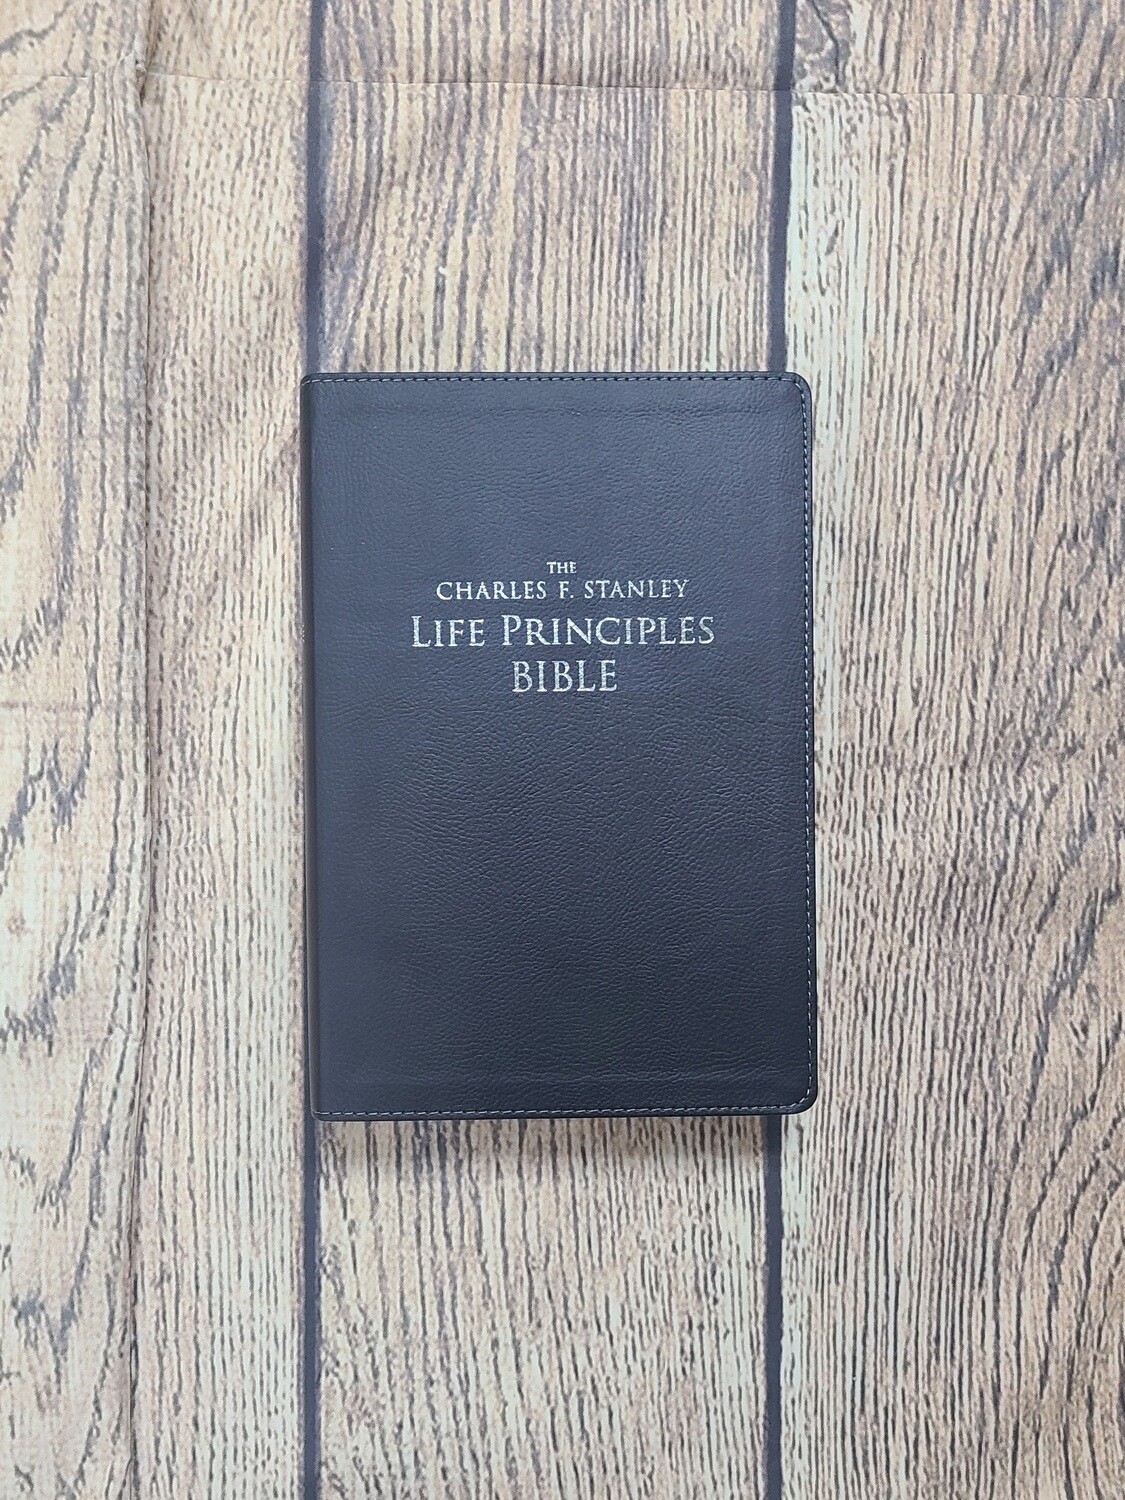 NKJV Charles F. Stanley Life Principles Bible - Large Print - Black Leathersoft